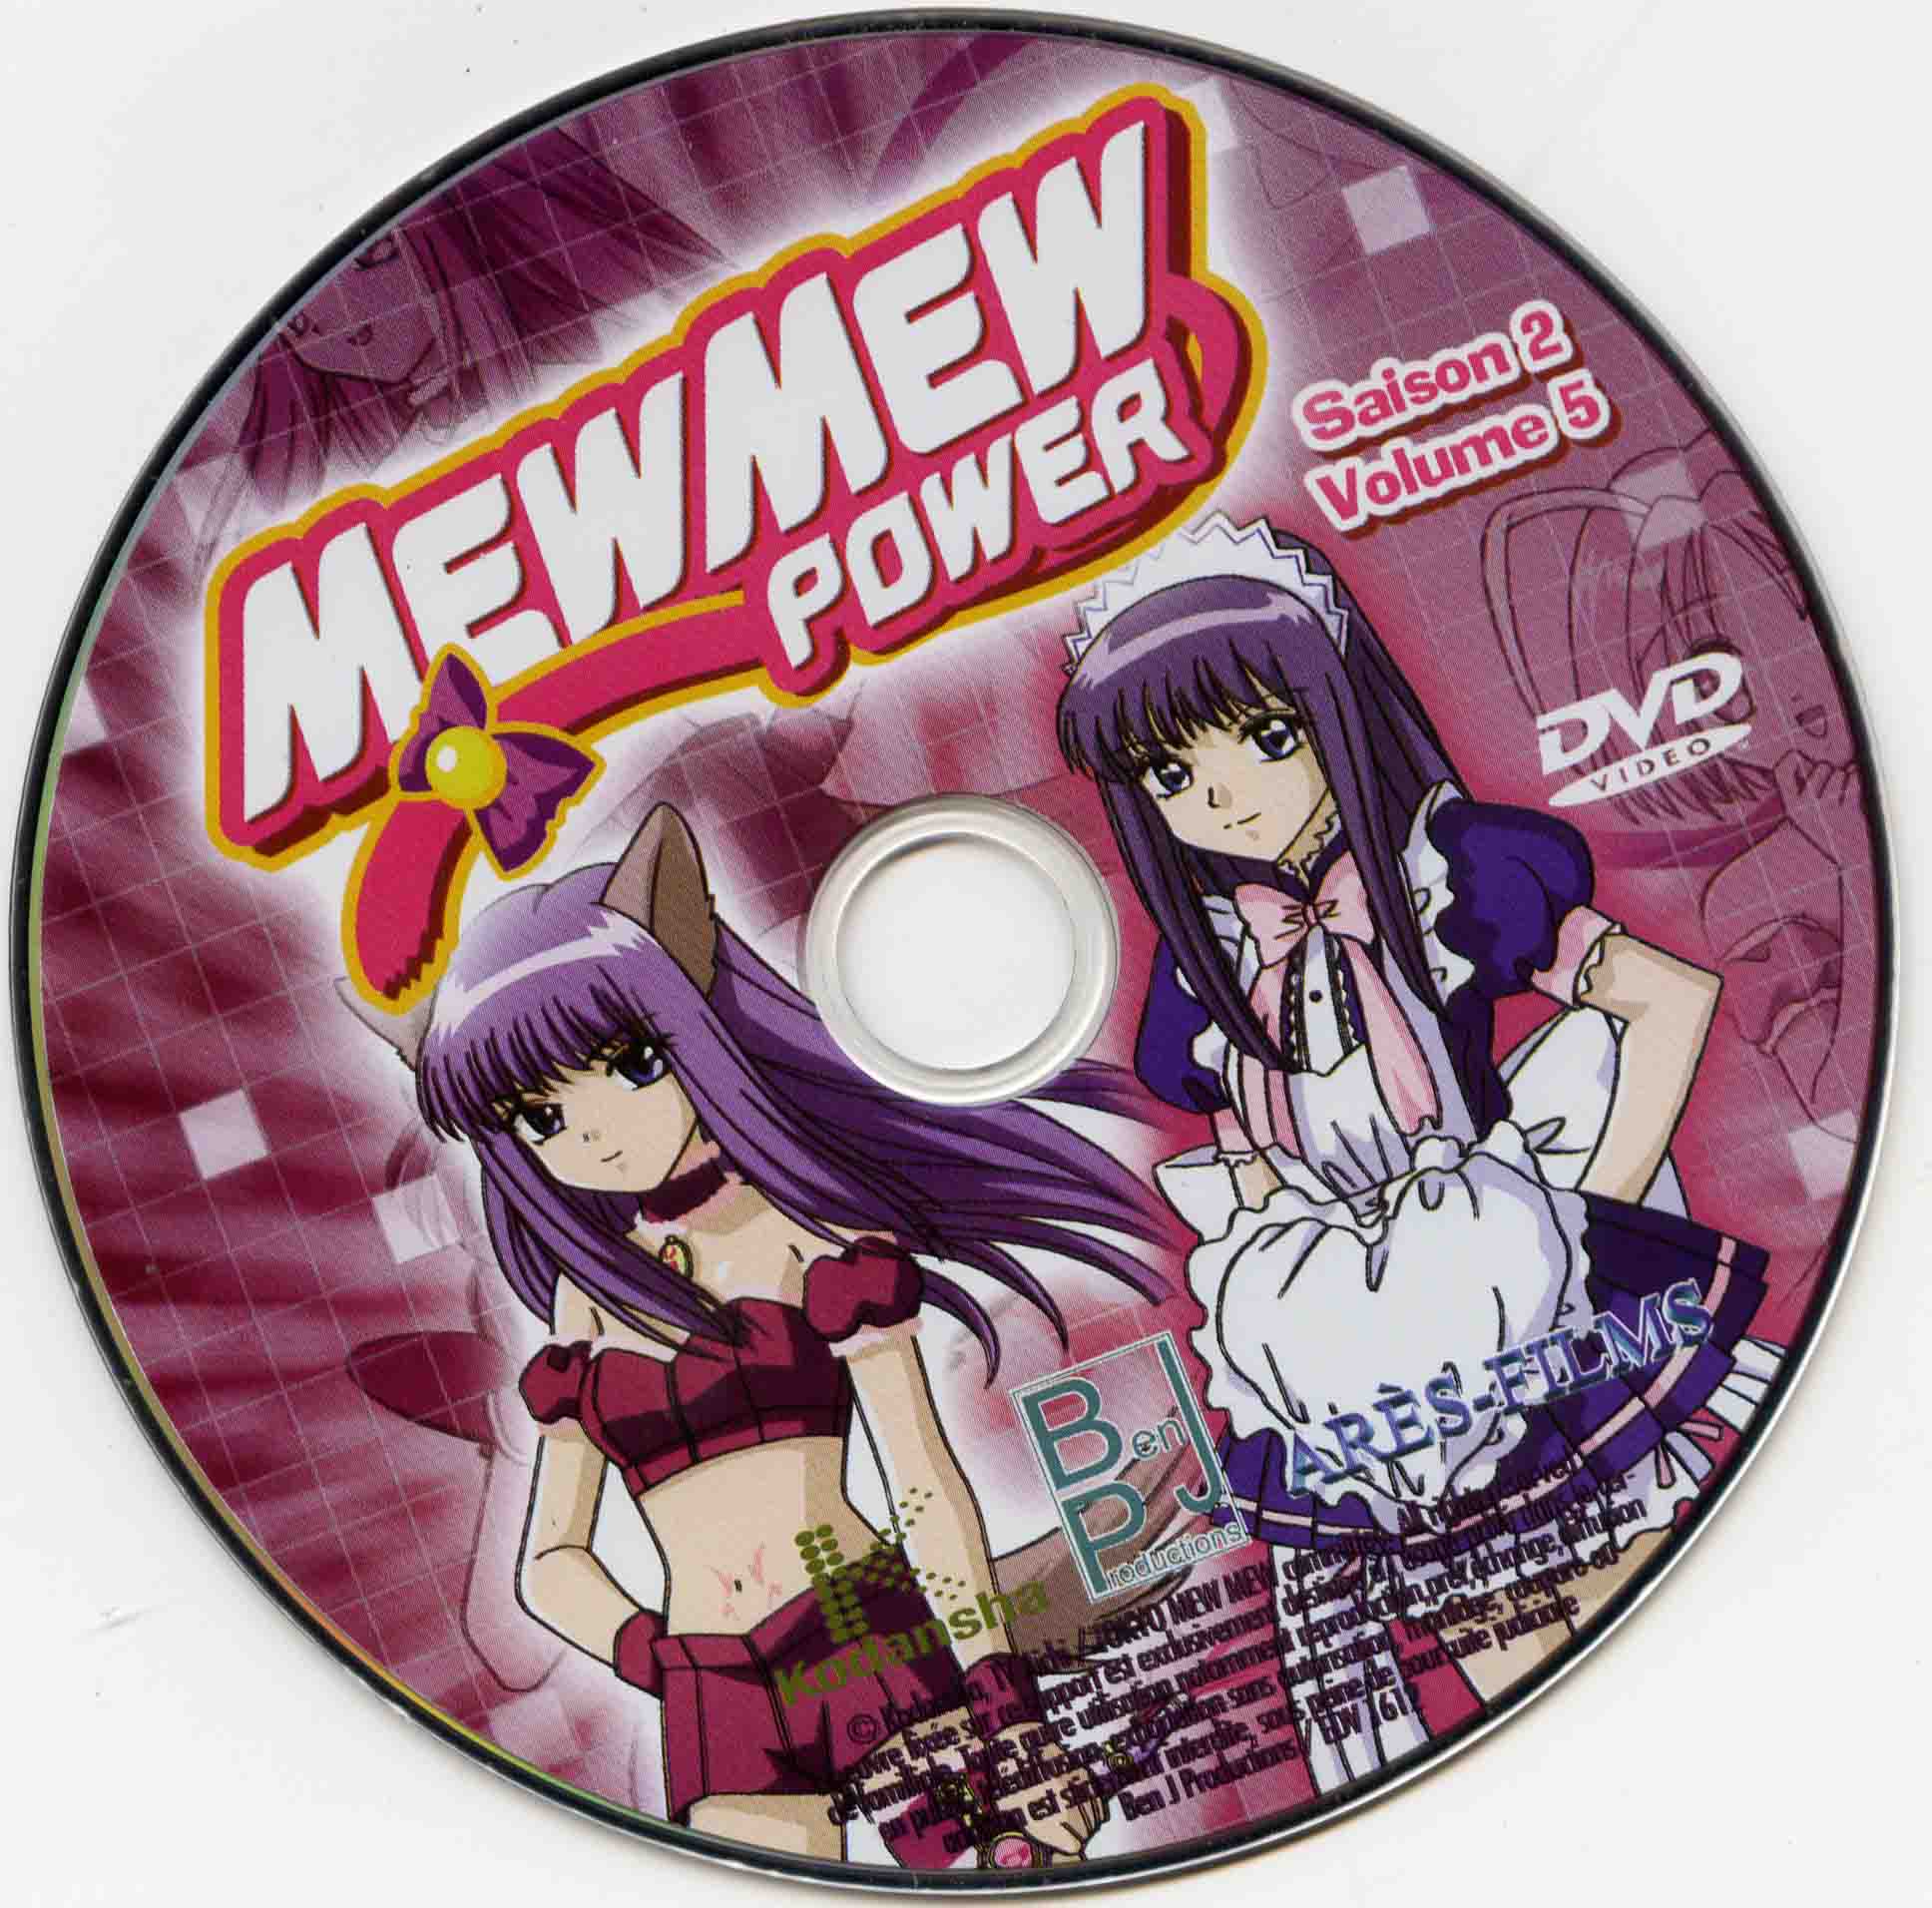 MewMew power Saison 2 DISC 5